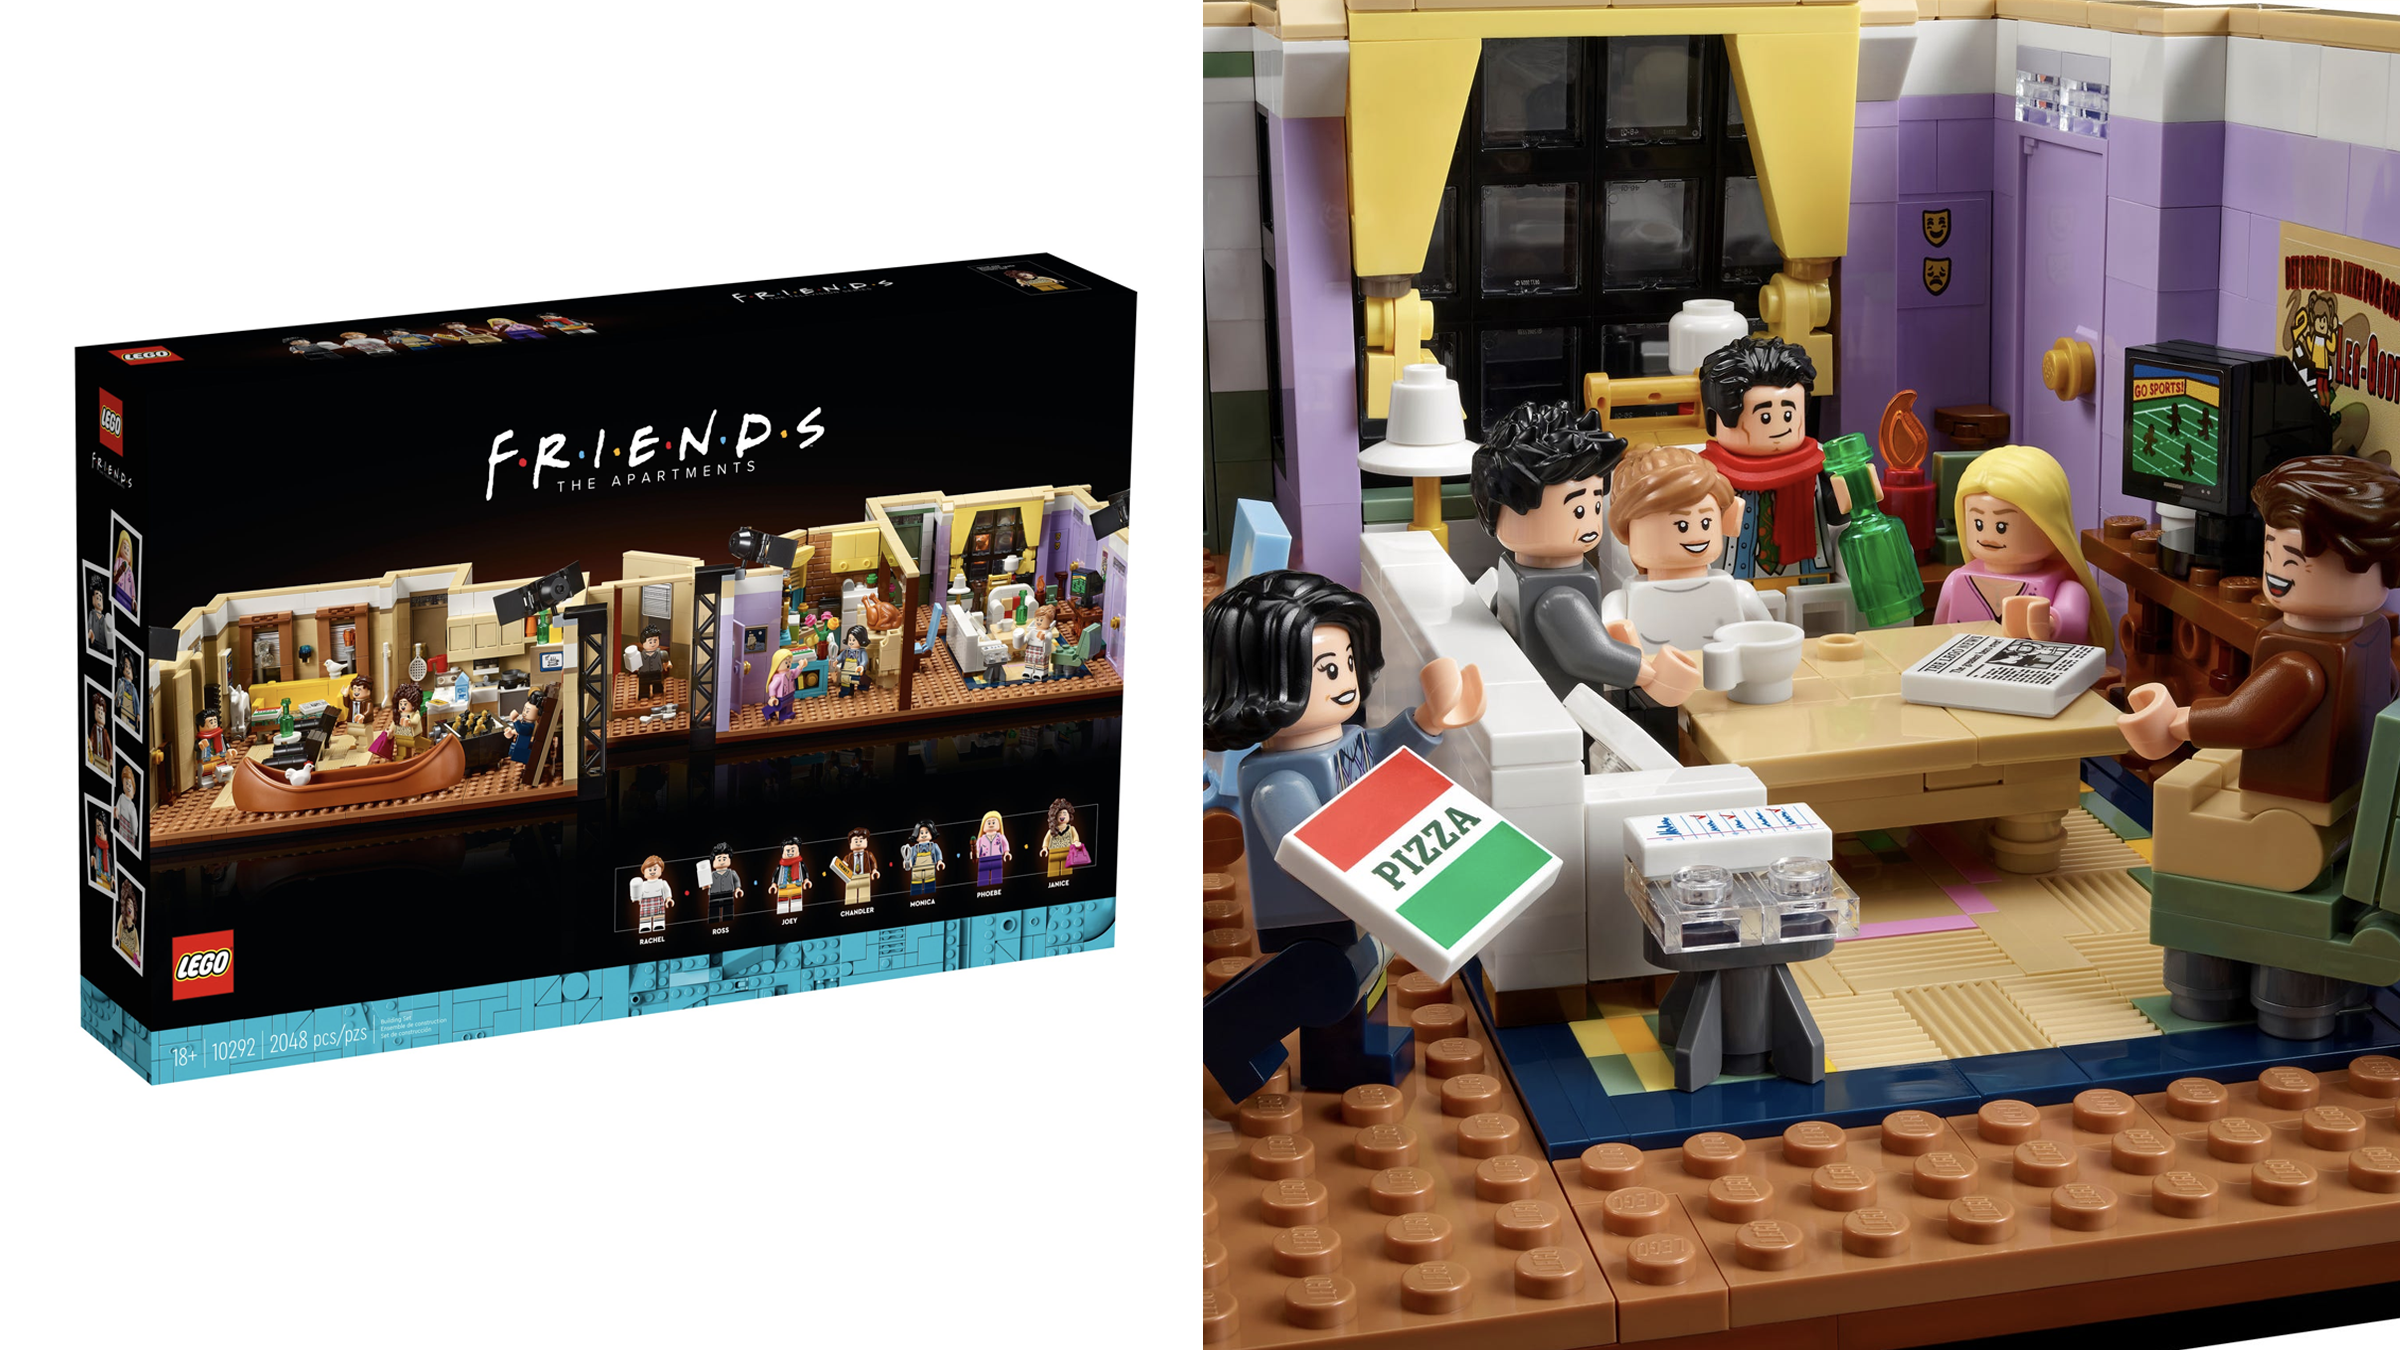 LEGO commercialise l'appartement de Friends dans un set de 2048 pièces